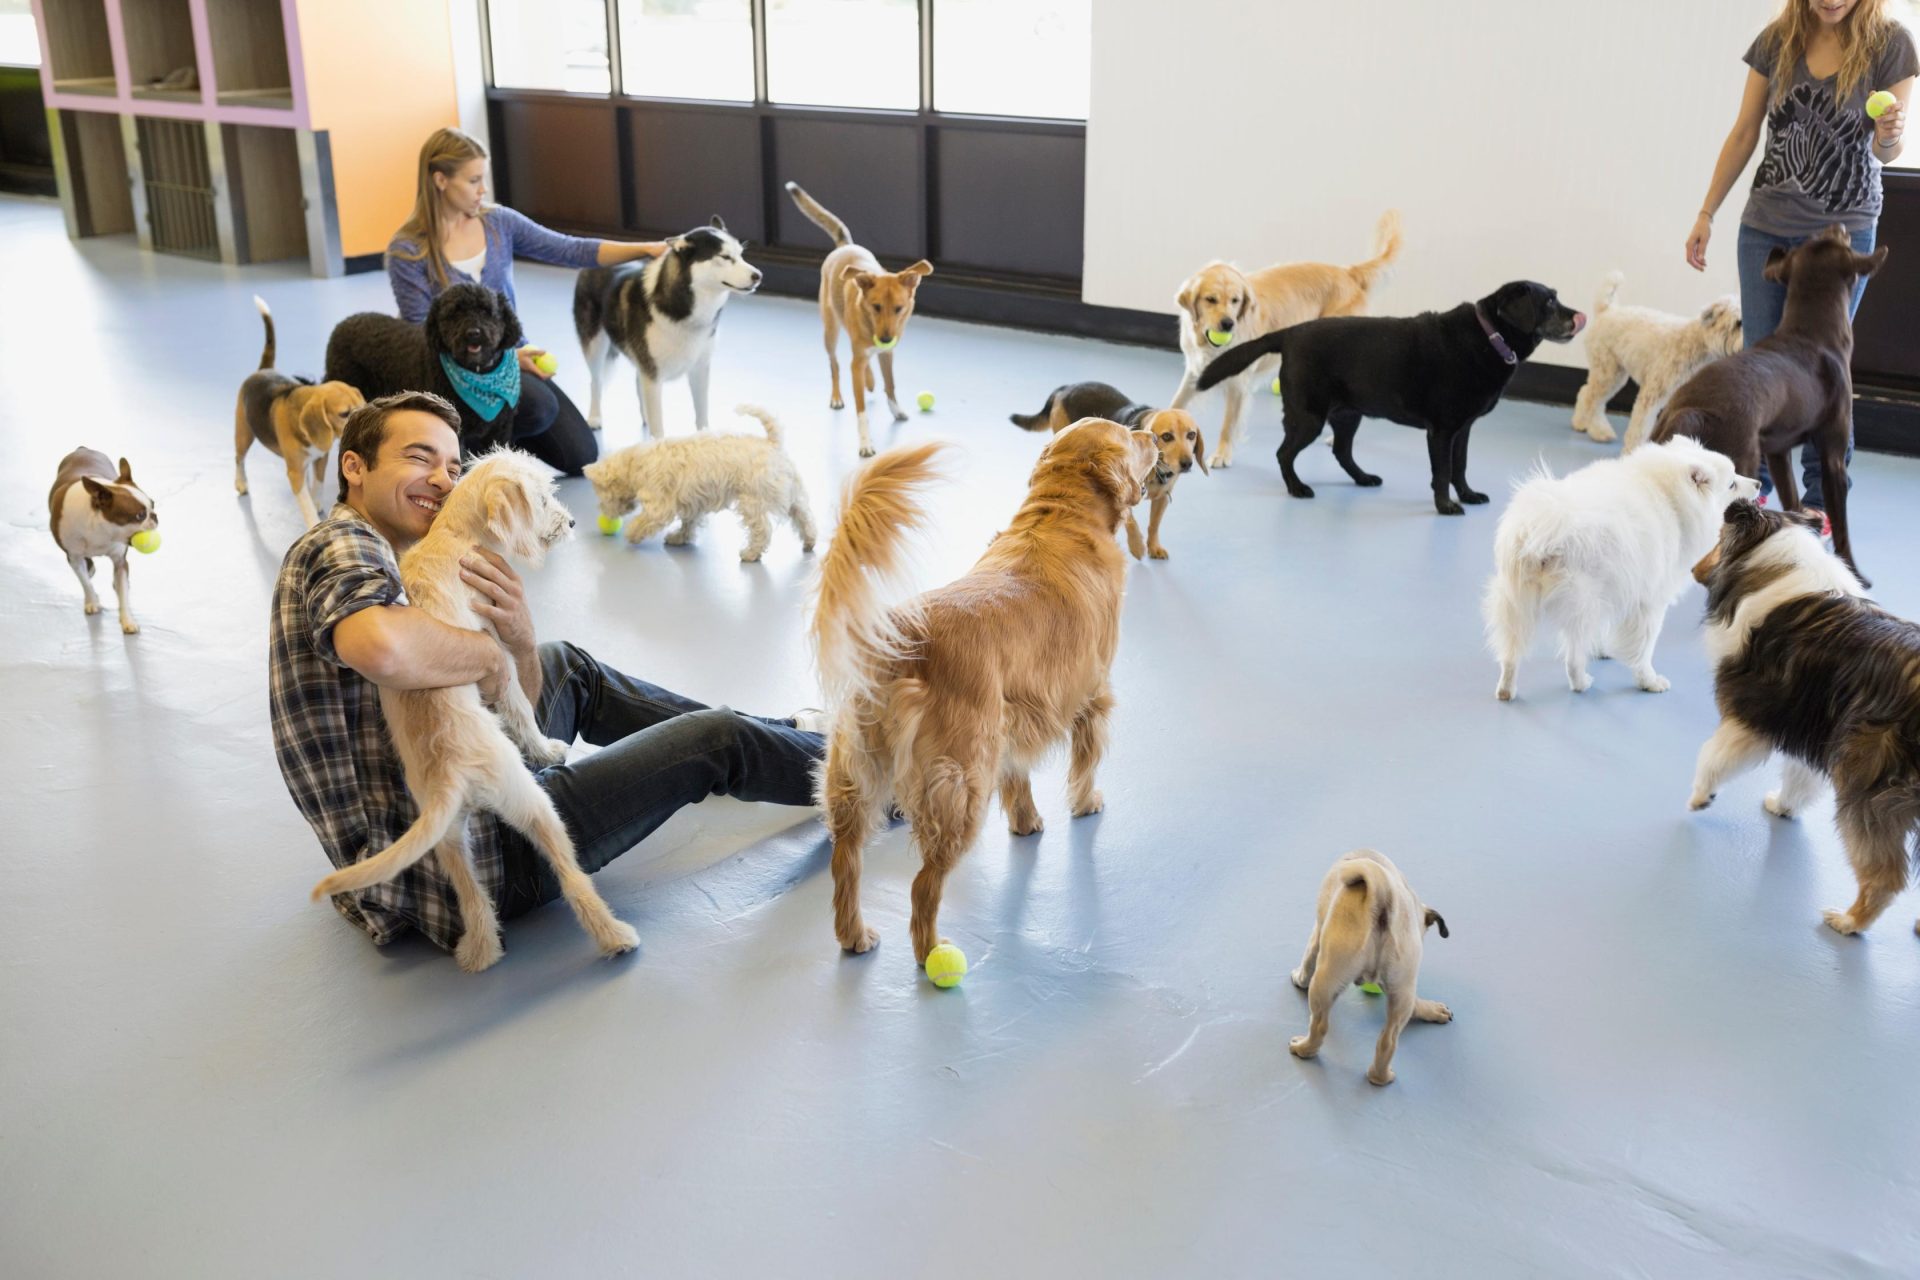 Personas juegan en una sala con multitud de perros